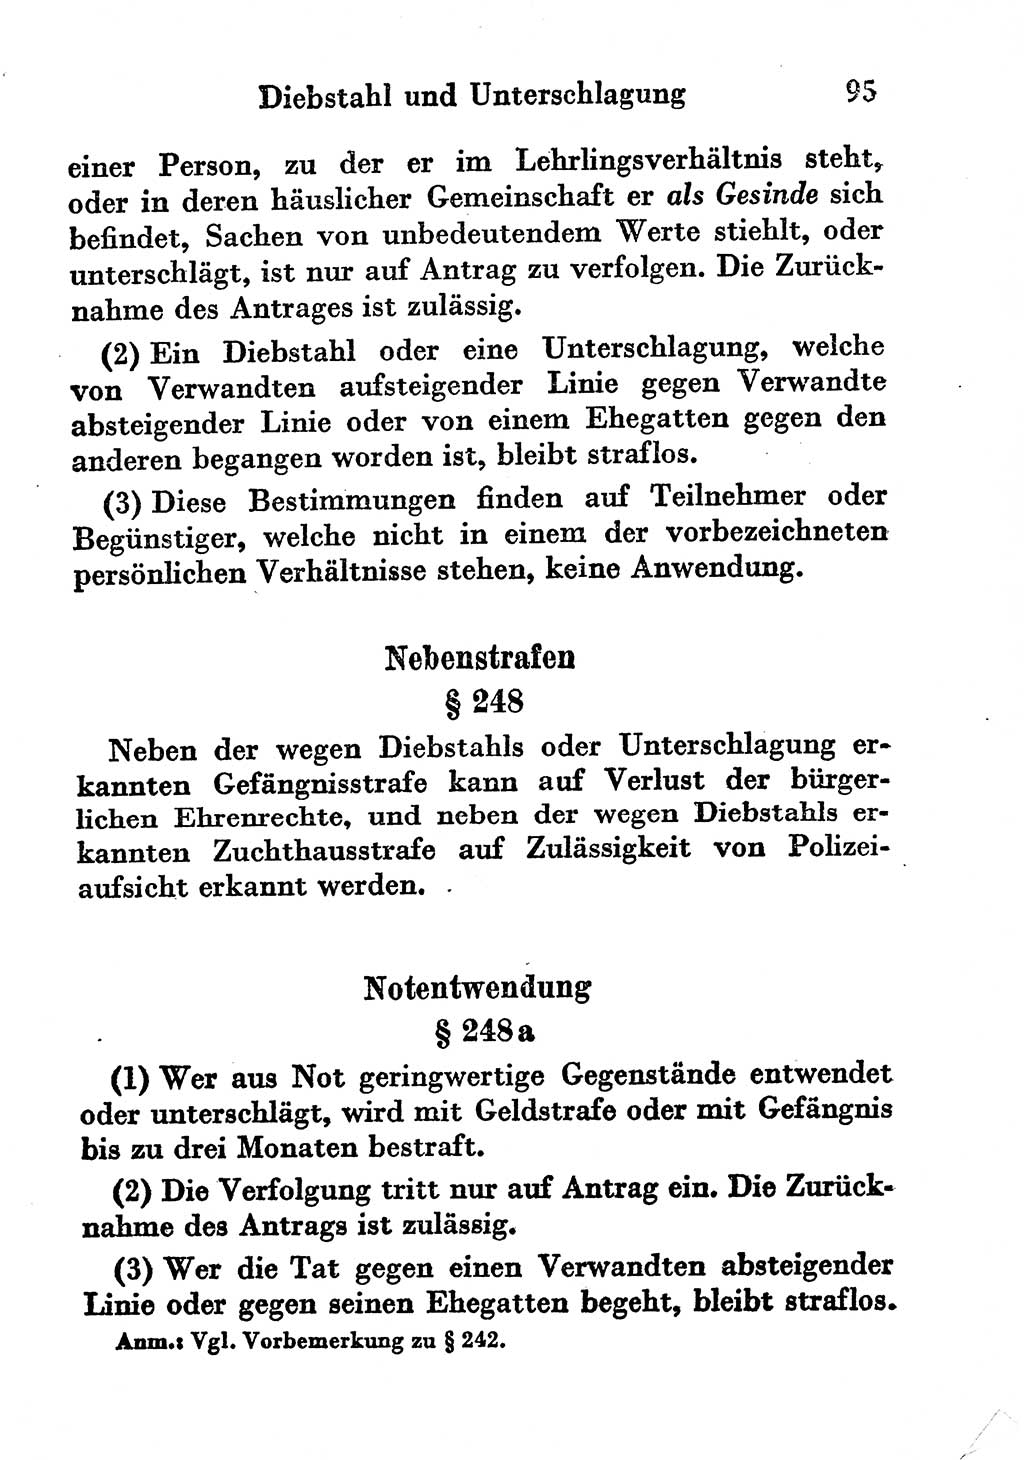 Strafgesetzbuch (StGB) und andere Strafgesetze [Deutsche Demokratische Republik (DDR)] 1956, Seite 95 (StGB Strafges. DDR 1956, S. 95)